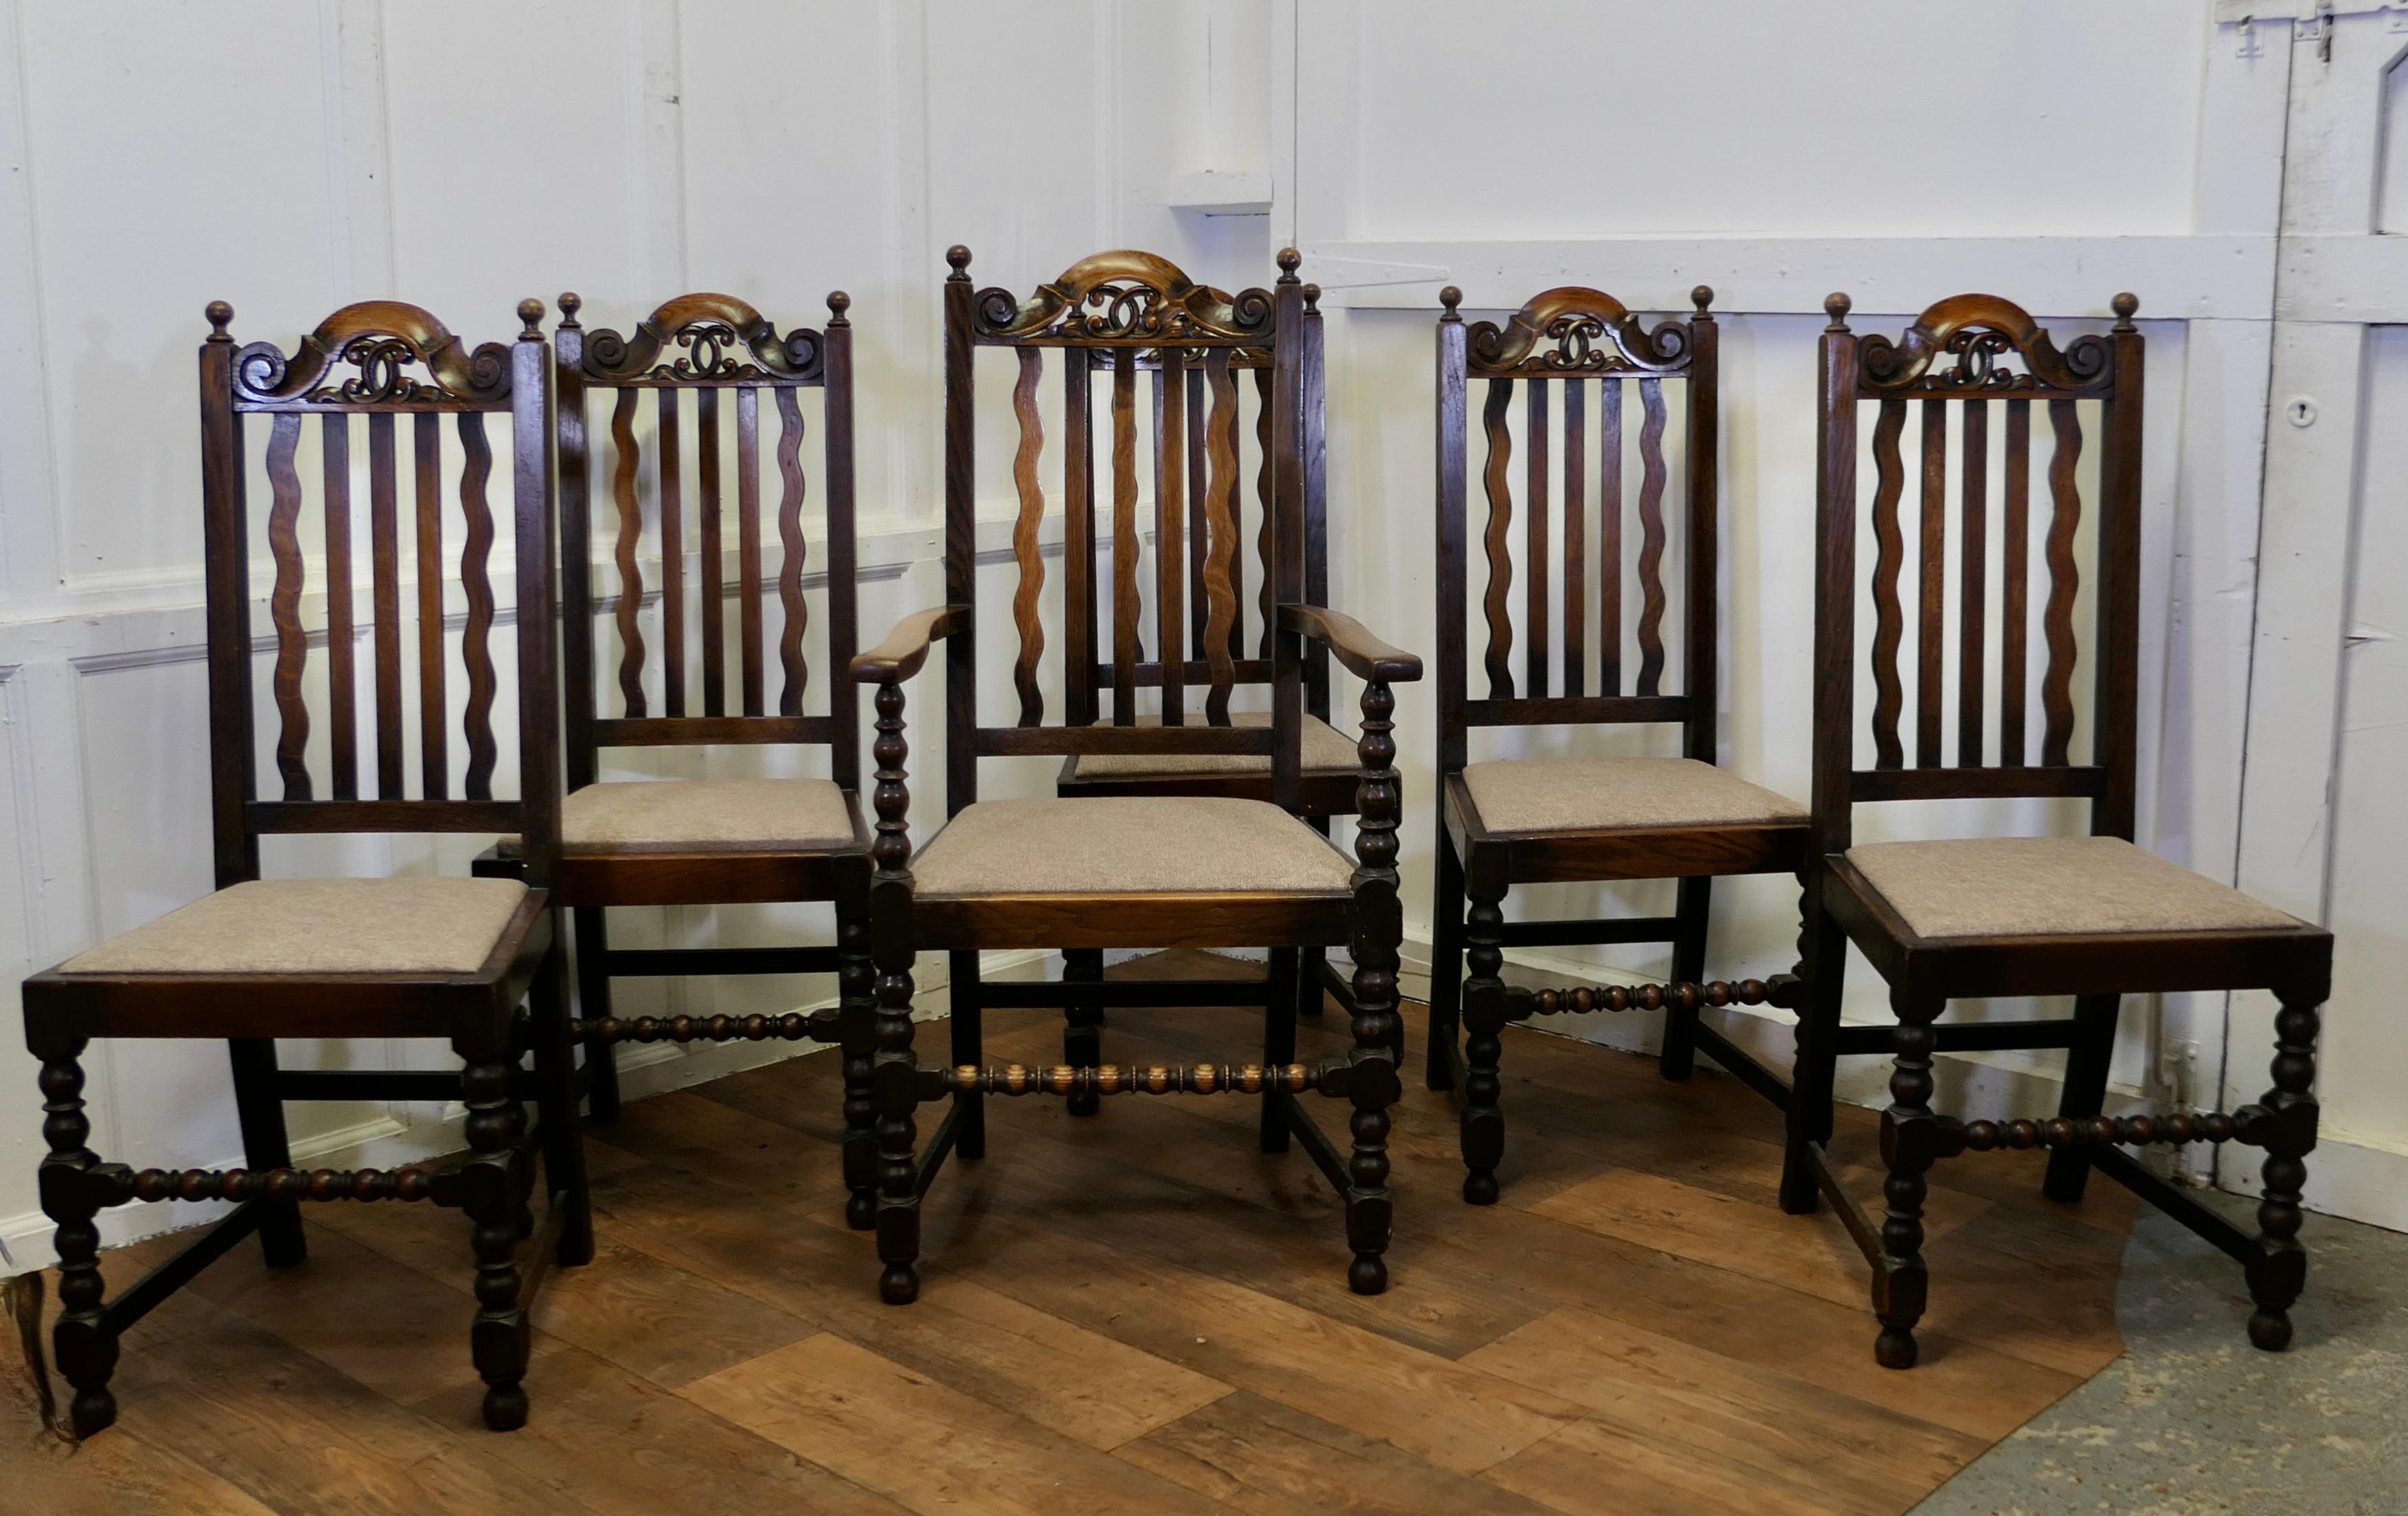 6 Stühle aus Eichenholz im Landhausstil des 19. 

Dies ist eine sehr hübsche Reihe von High Back Country Oak Chairs, von denen einer der Carver Chair ist 
Diese hübschen Eichenholzrahmen haben gedrechselte Beine und geklöppelte vordere Läufer, sie